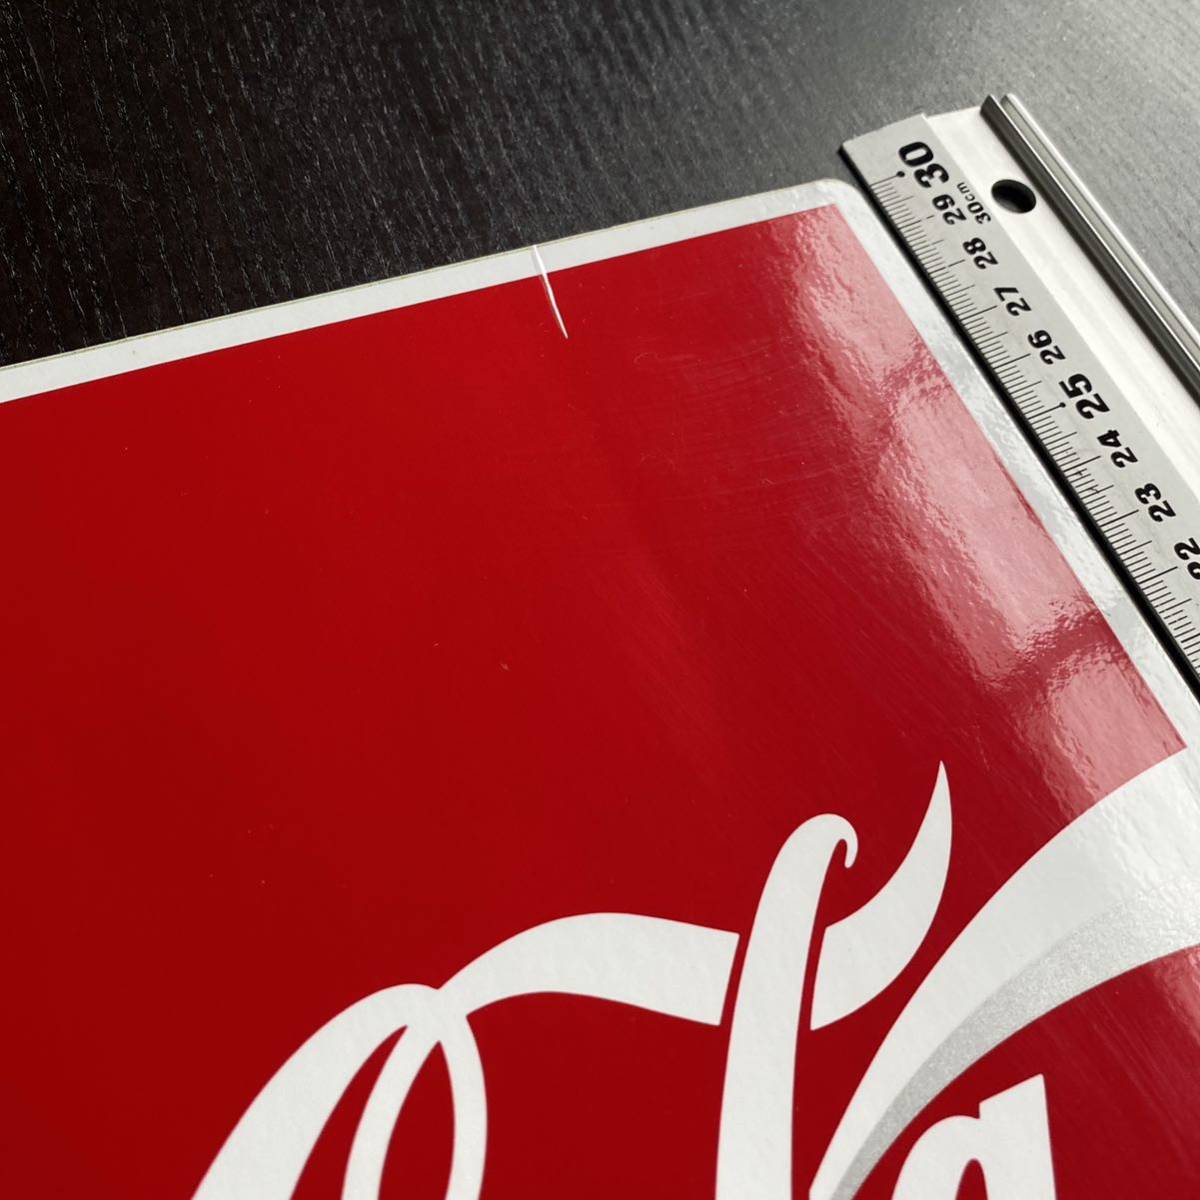  Coca Cola магазинный не продается большой размер размер стикер супер редкий товар * новый товар не использовался товар 